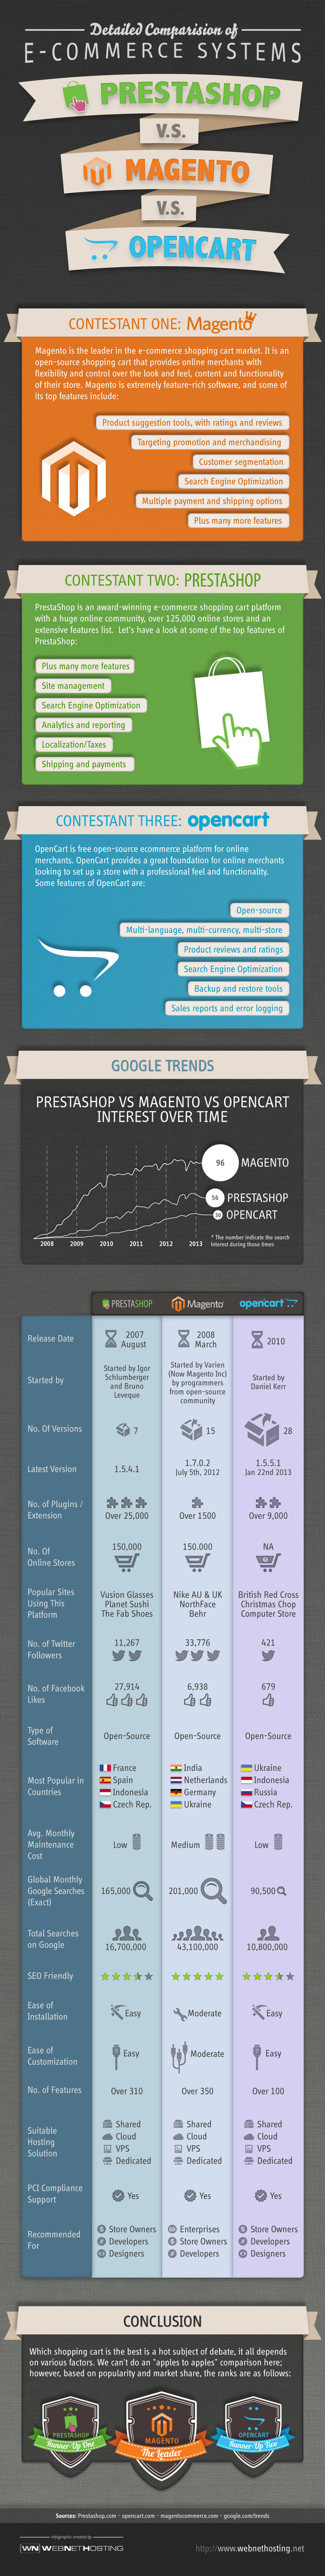 Infografía uso de Magento, PrestaShop y Opencart